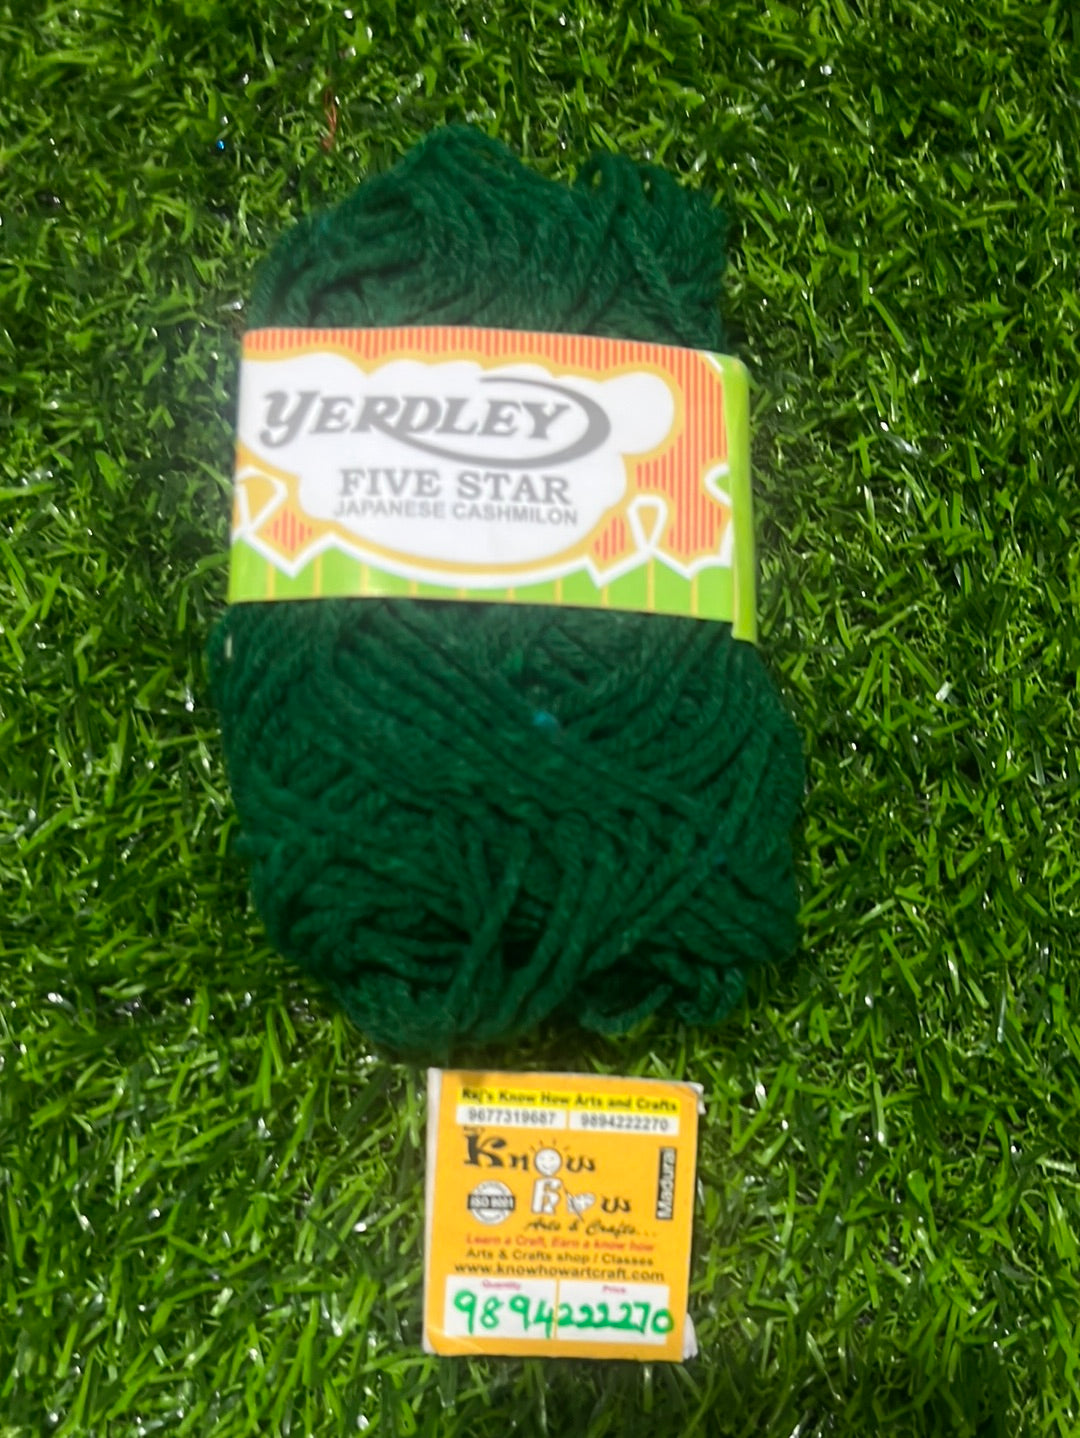 Sap green Woolen thread